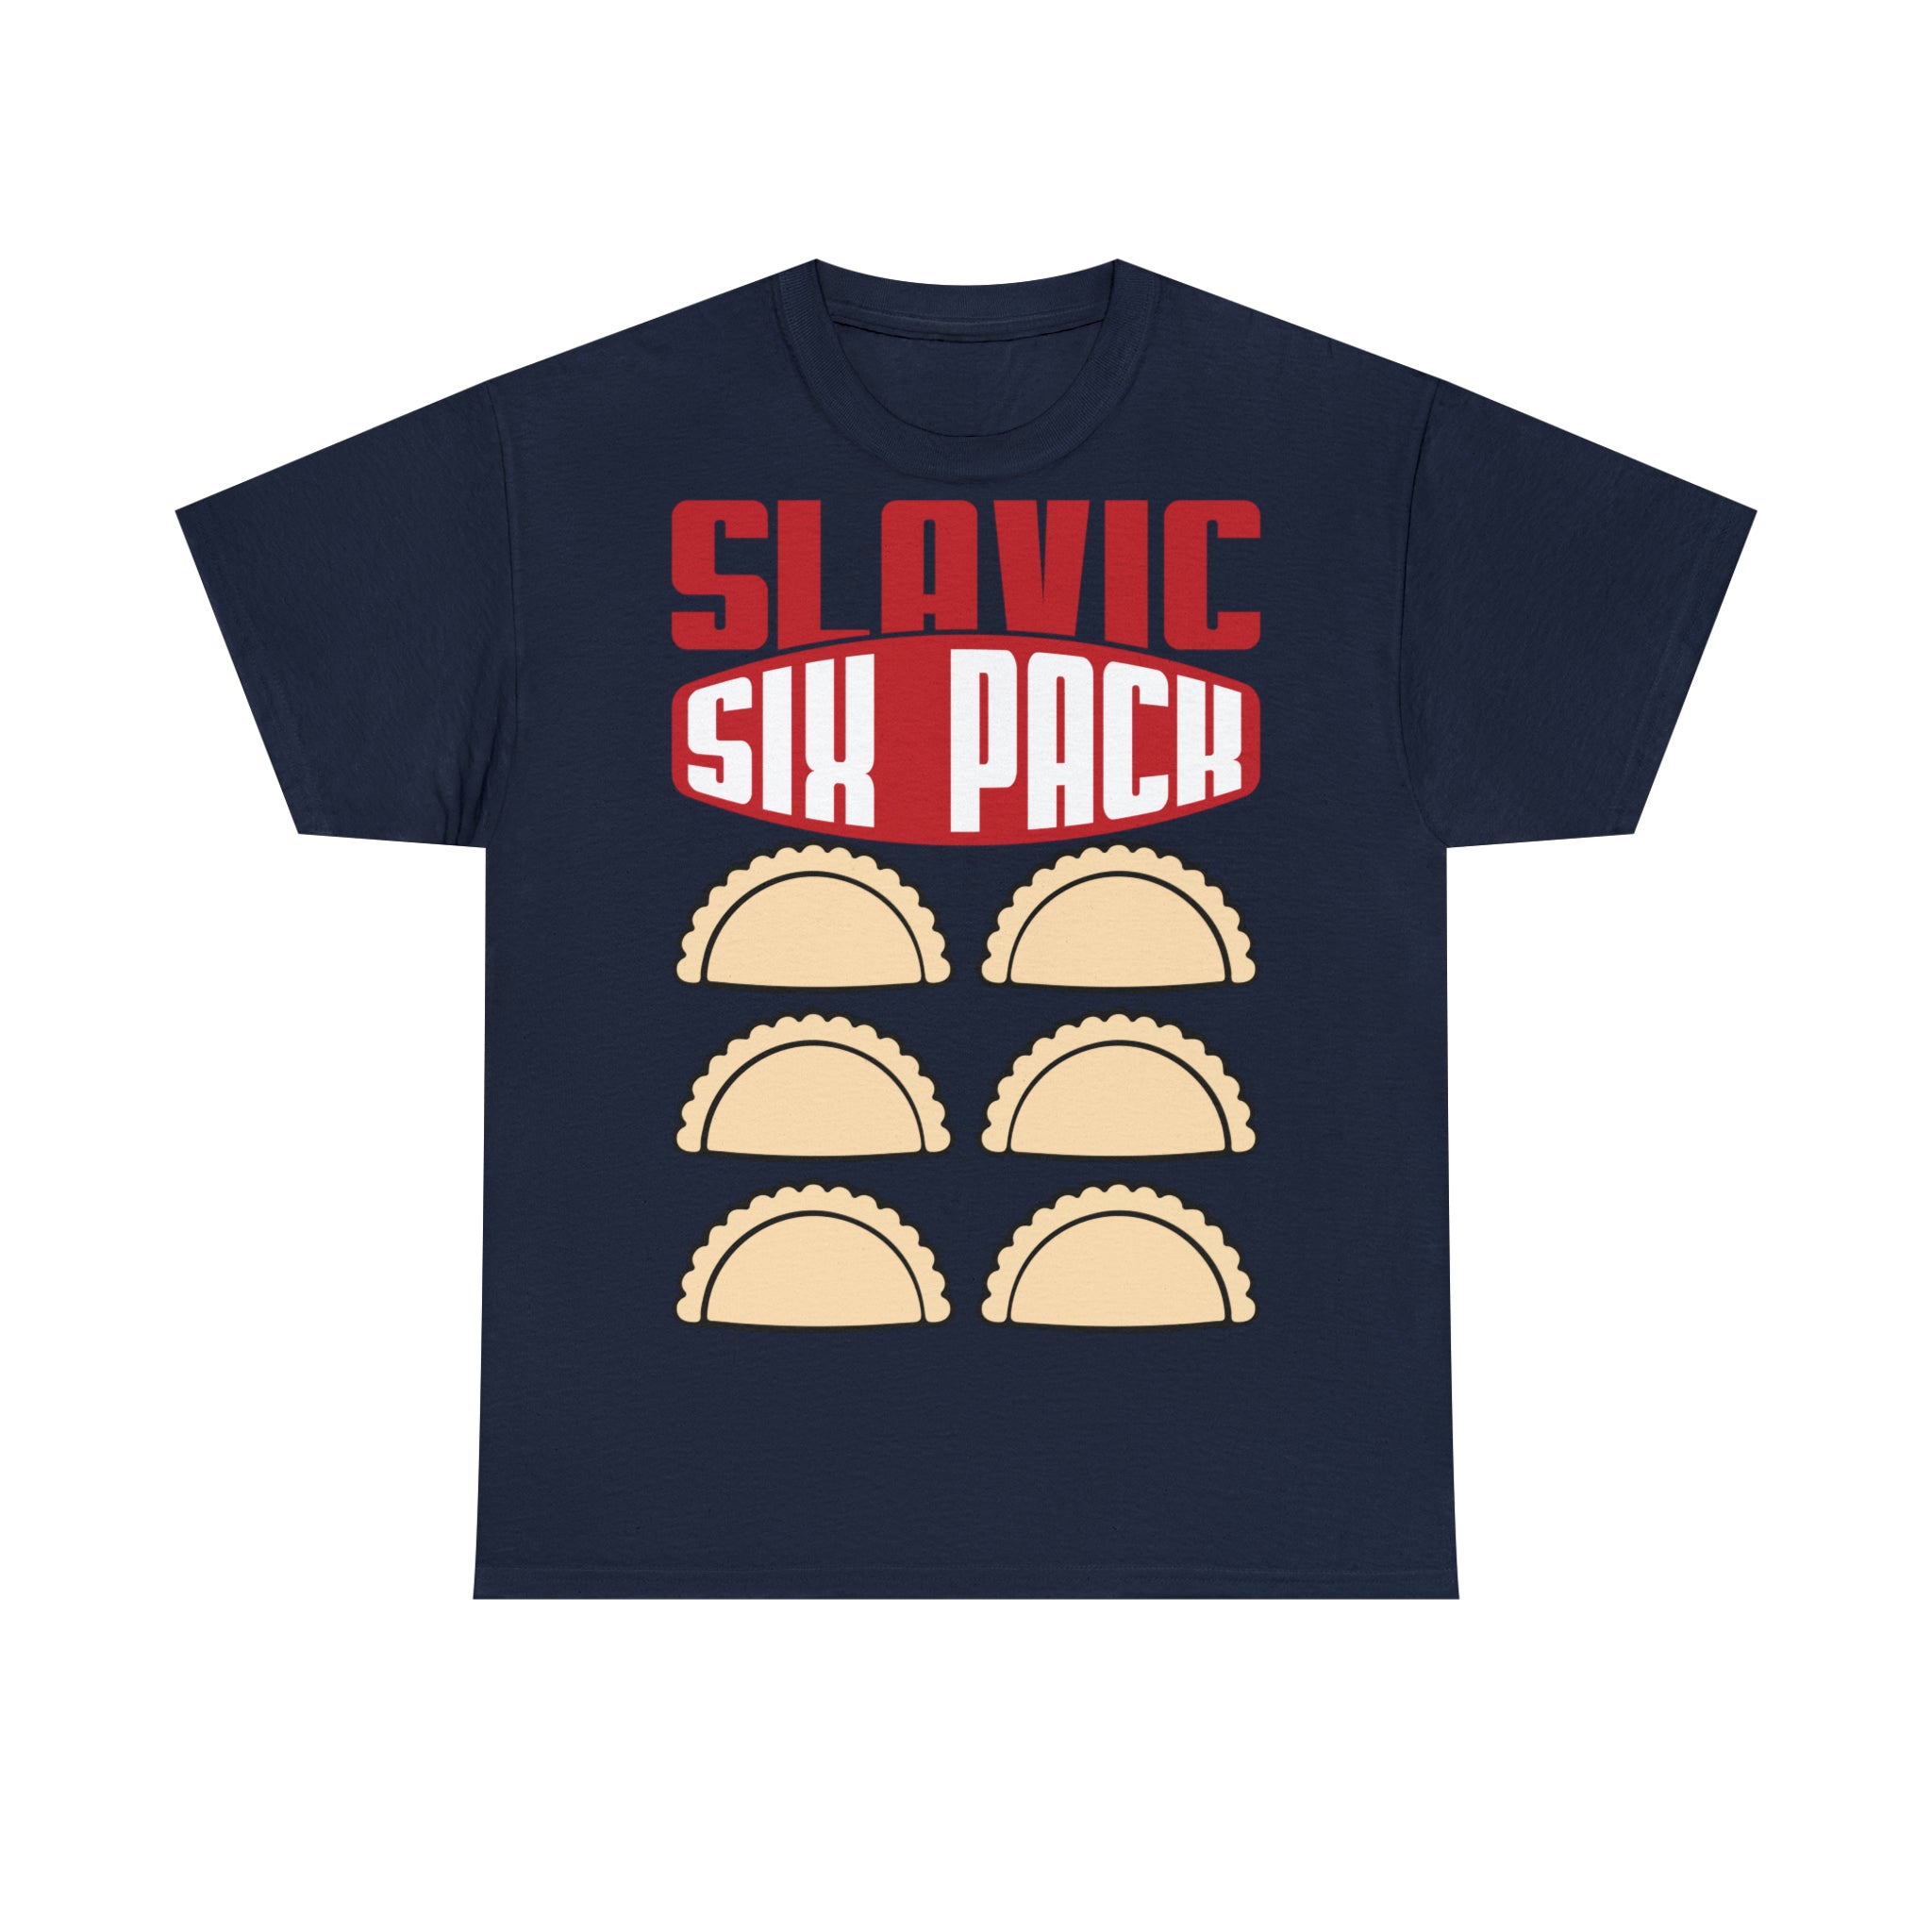 Slavic Six Pack